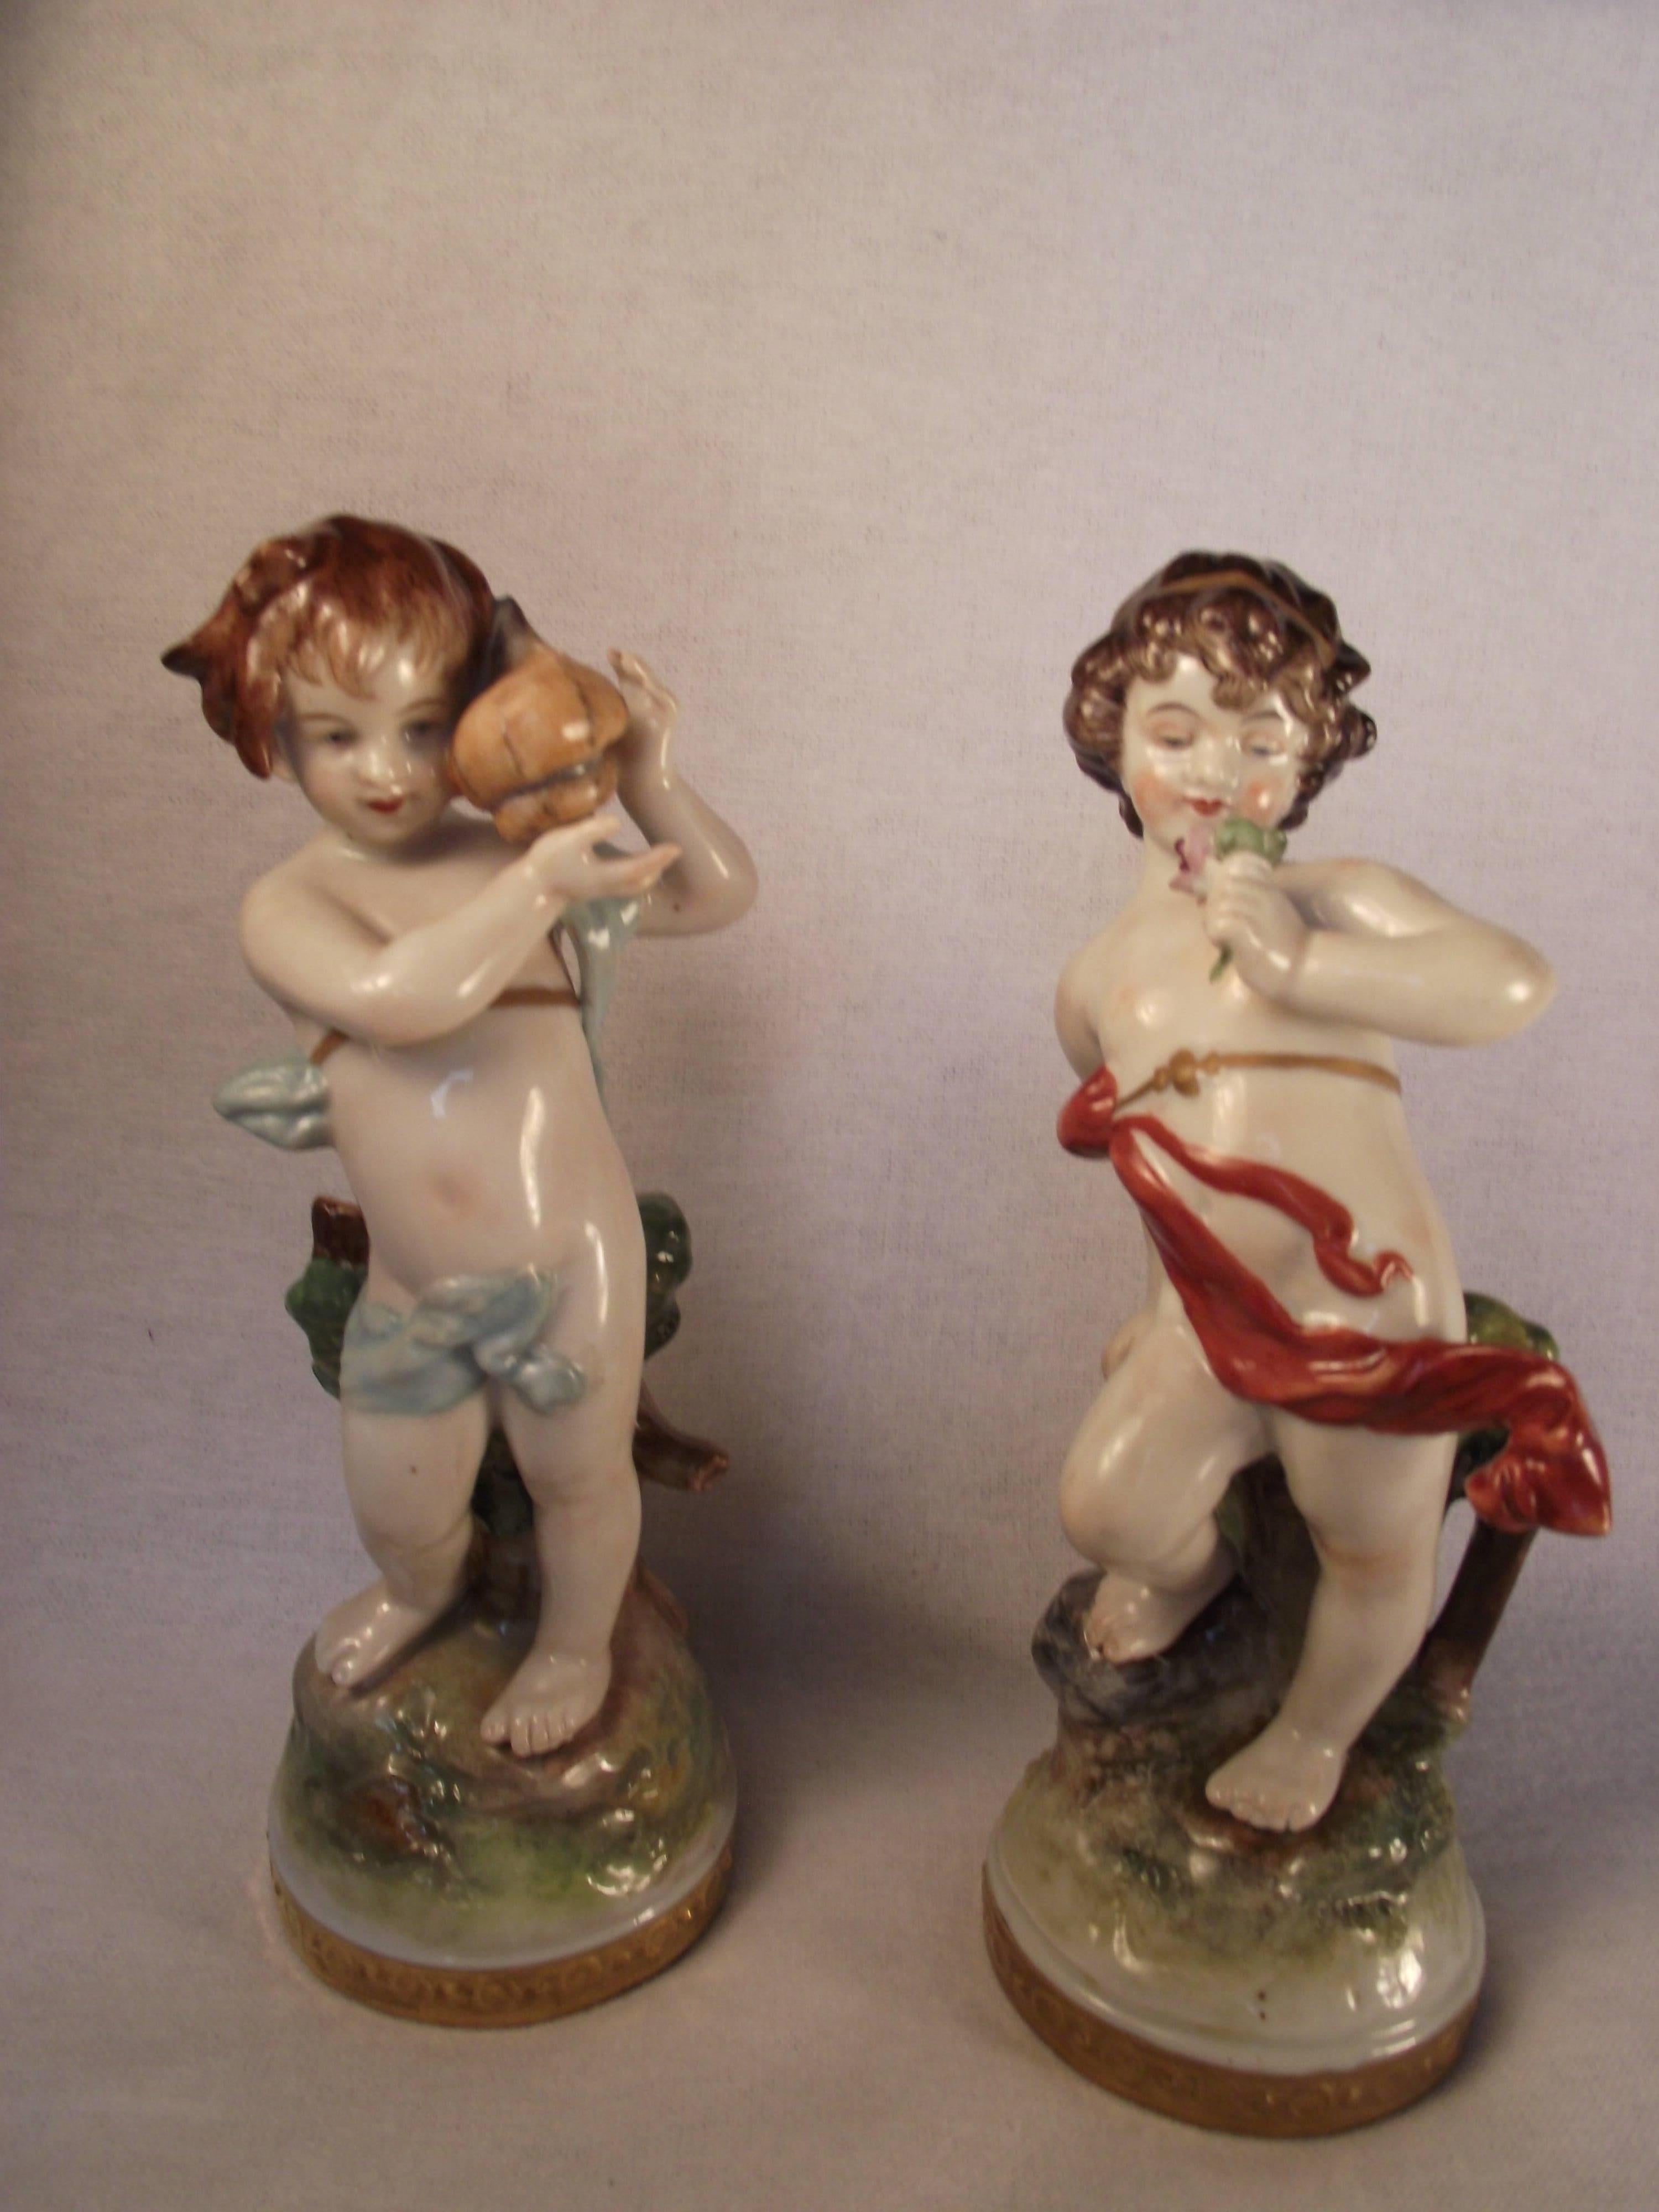 volkstedt figurines